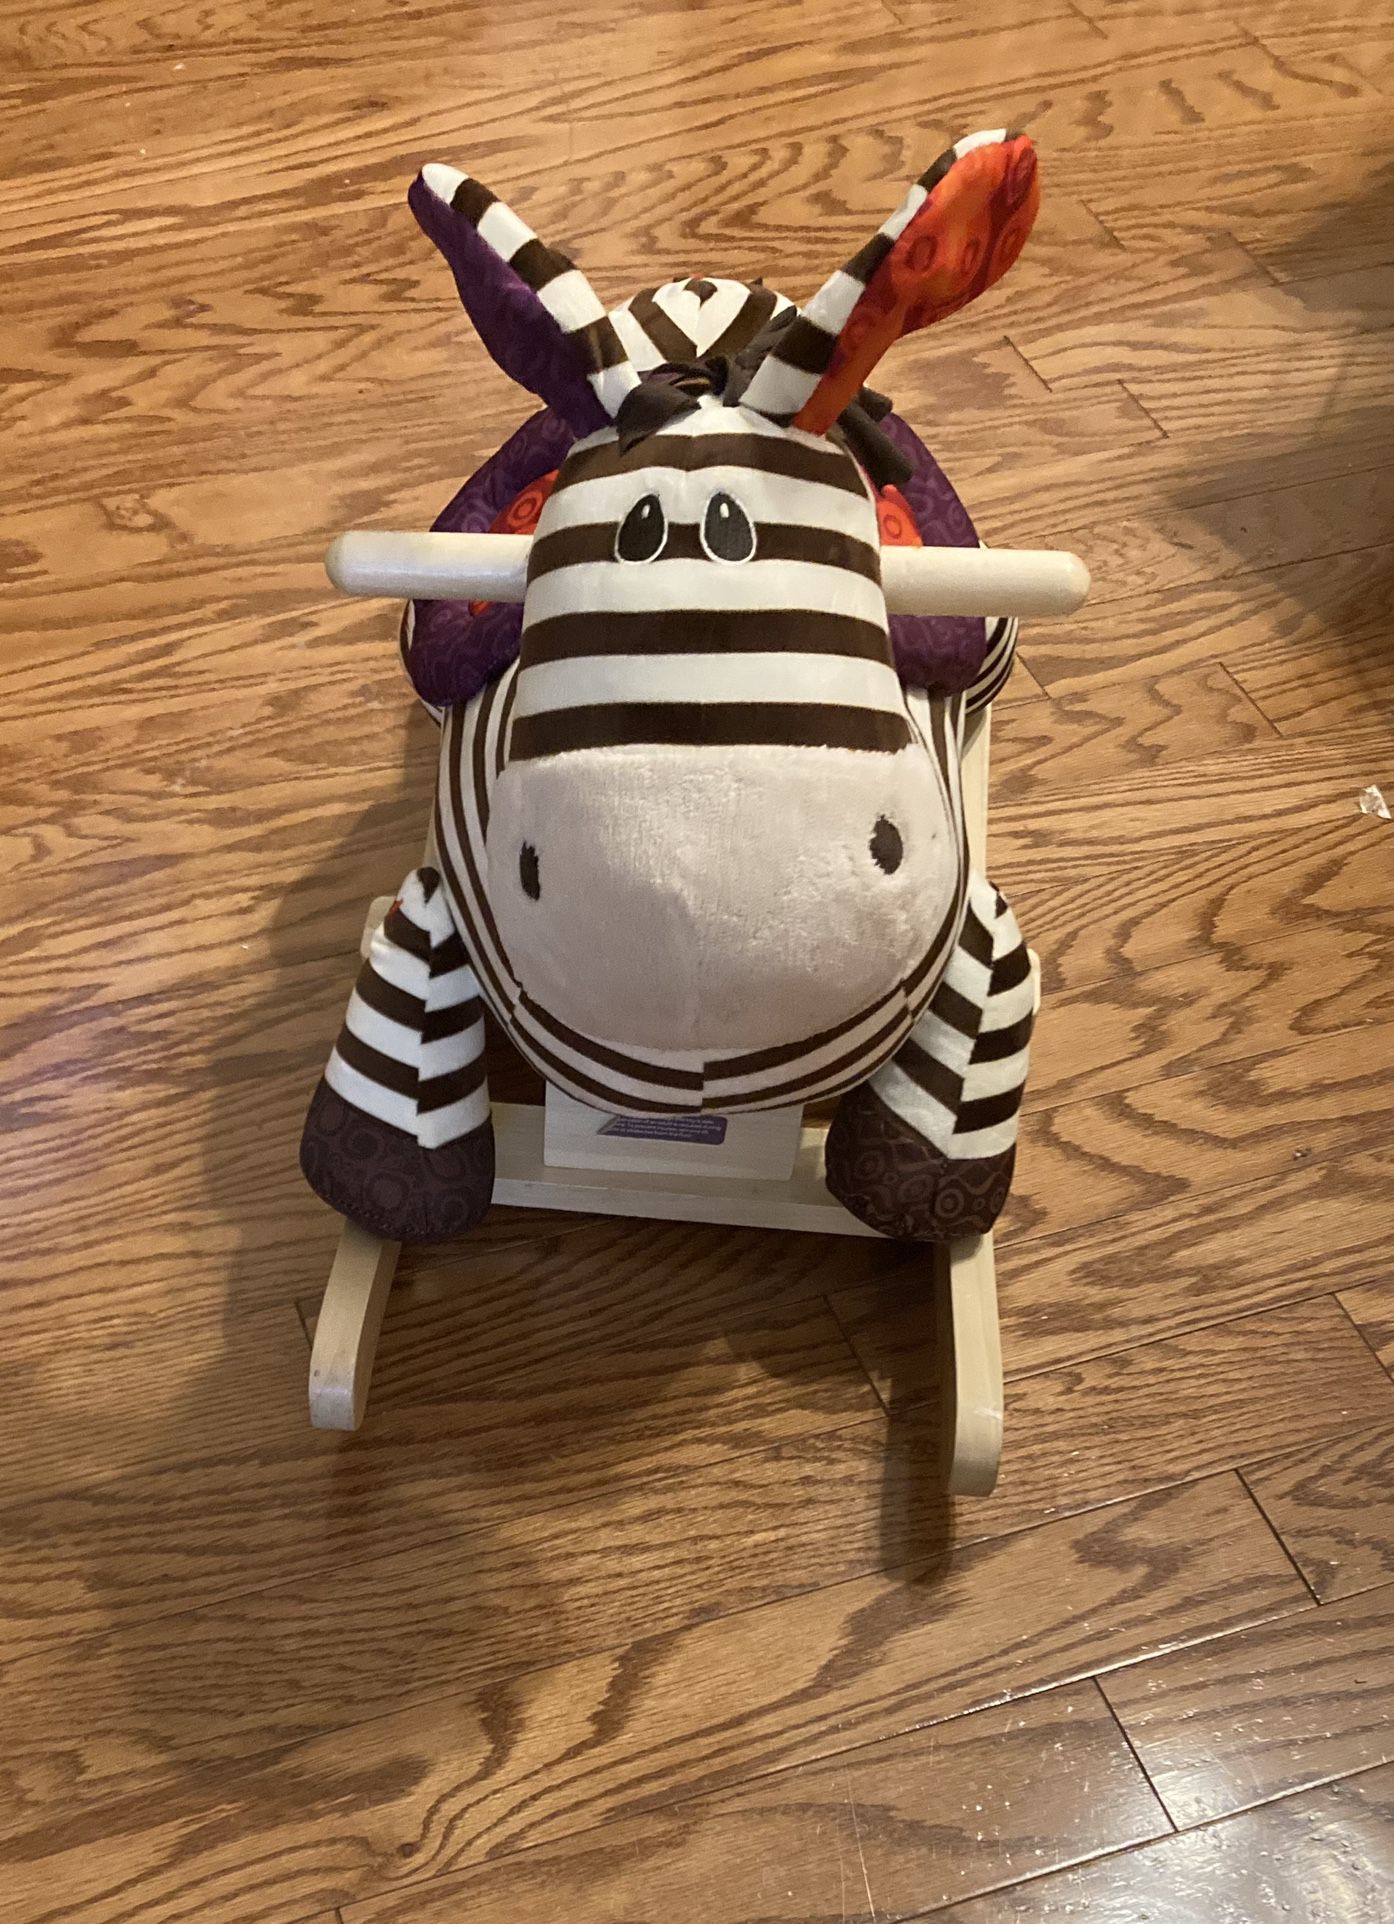 New Rock-a-baby Zebra Rocking Chair Awww OBO